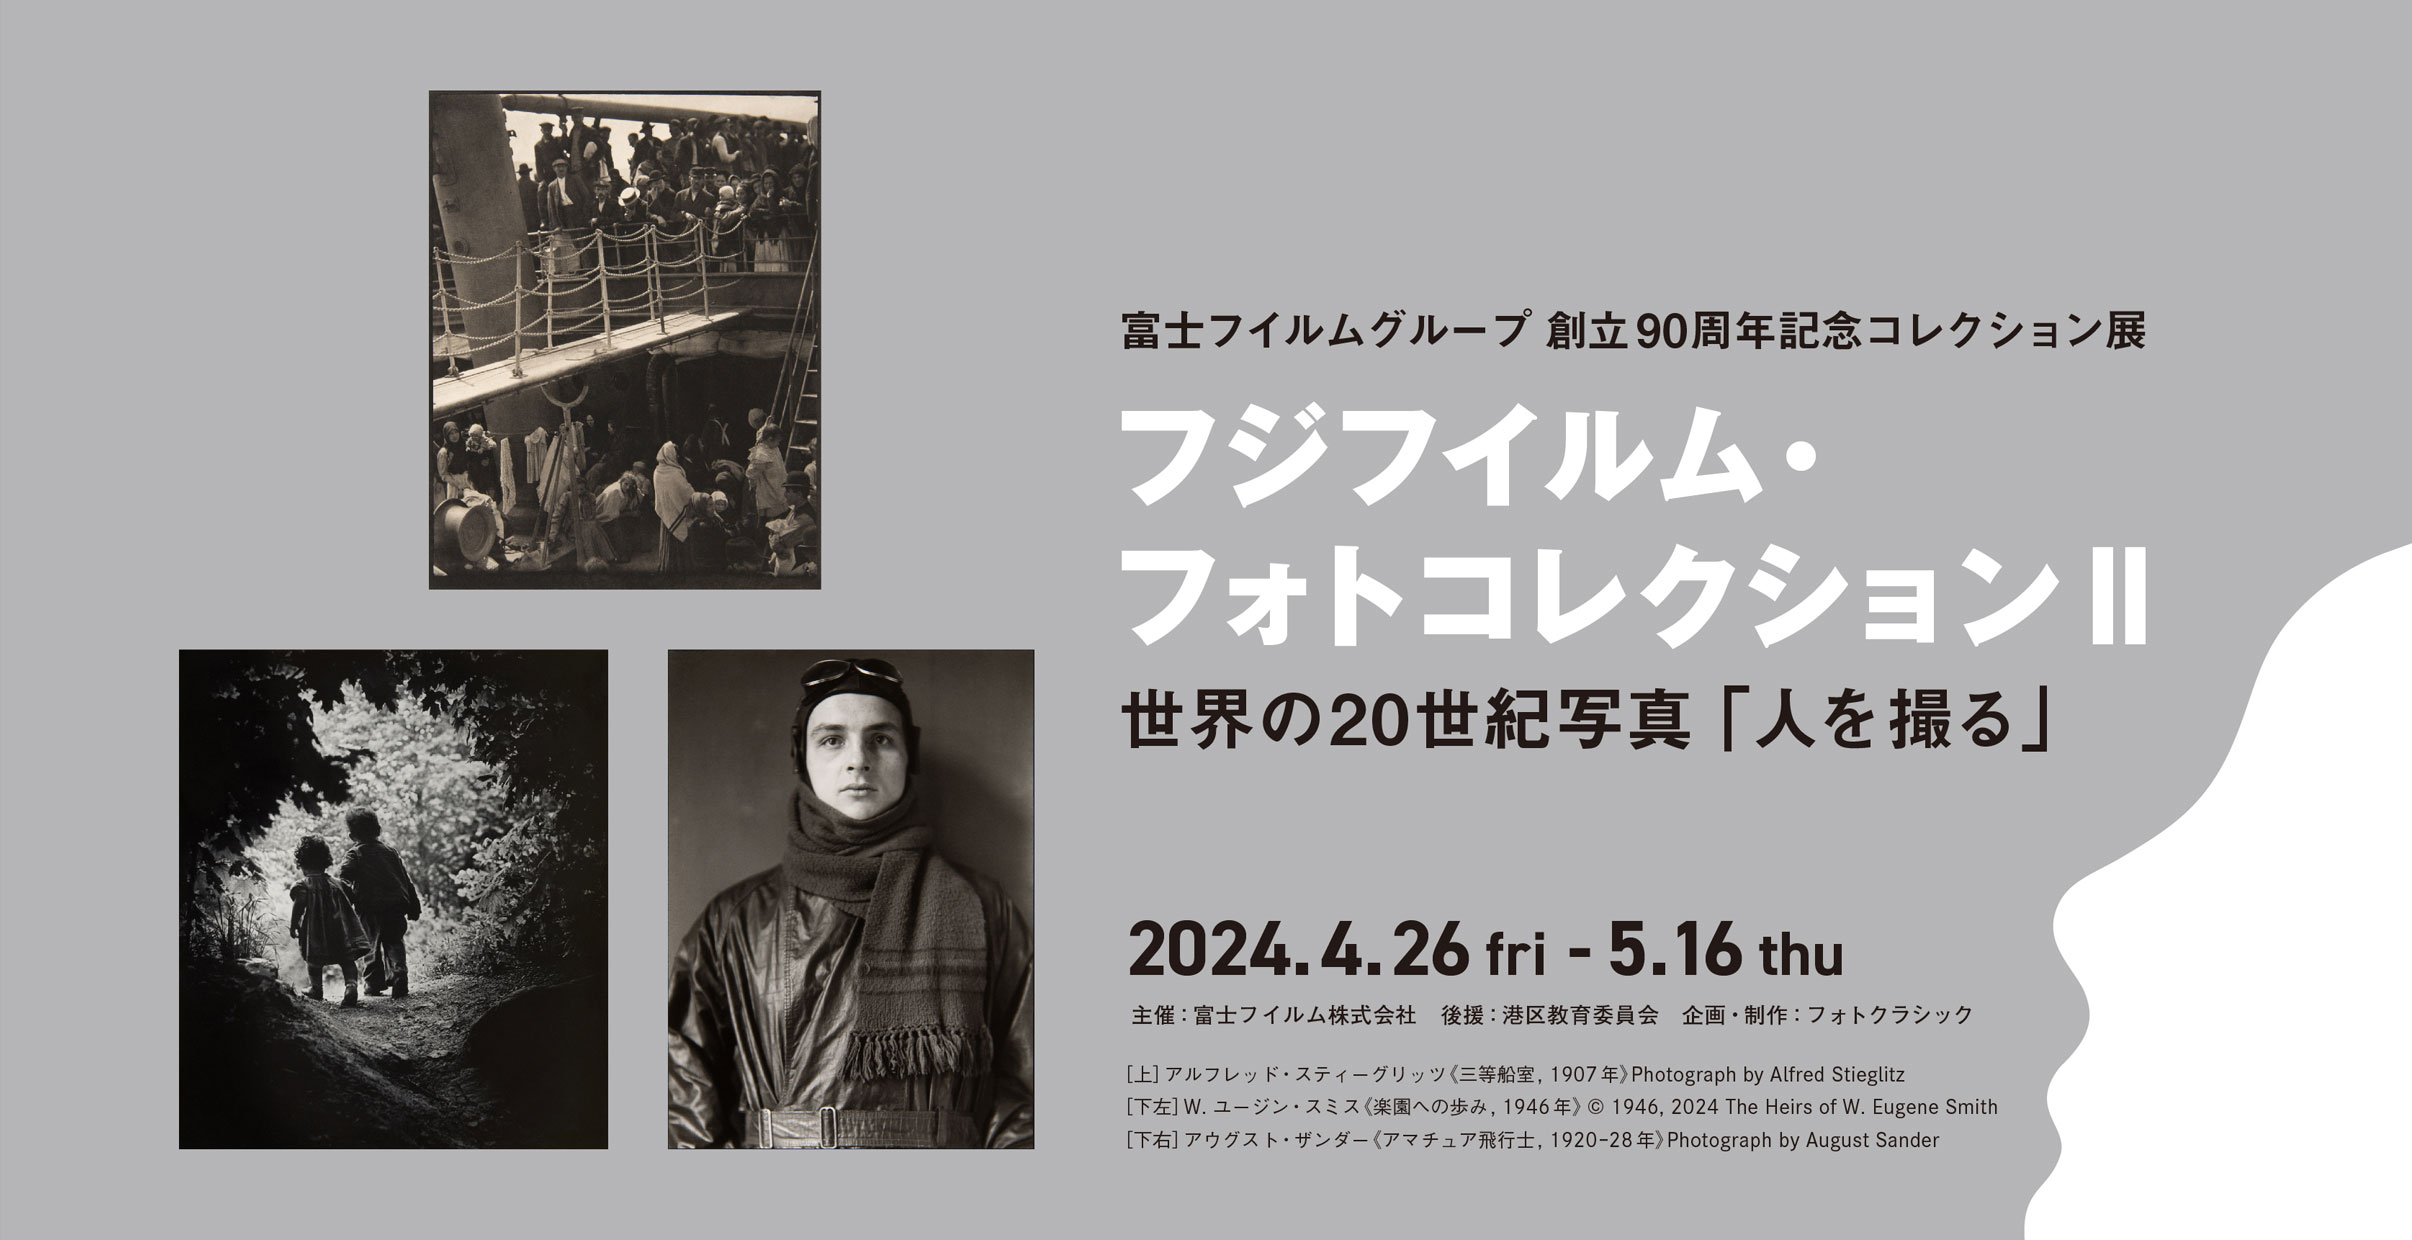 [image]富士フイルムグループ 創立90周年記念コレクション展『フジフイルム・フォトコレクションII』世界の20世紀写真「人を撮る」